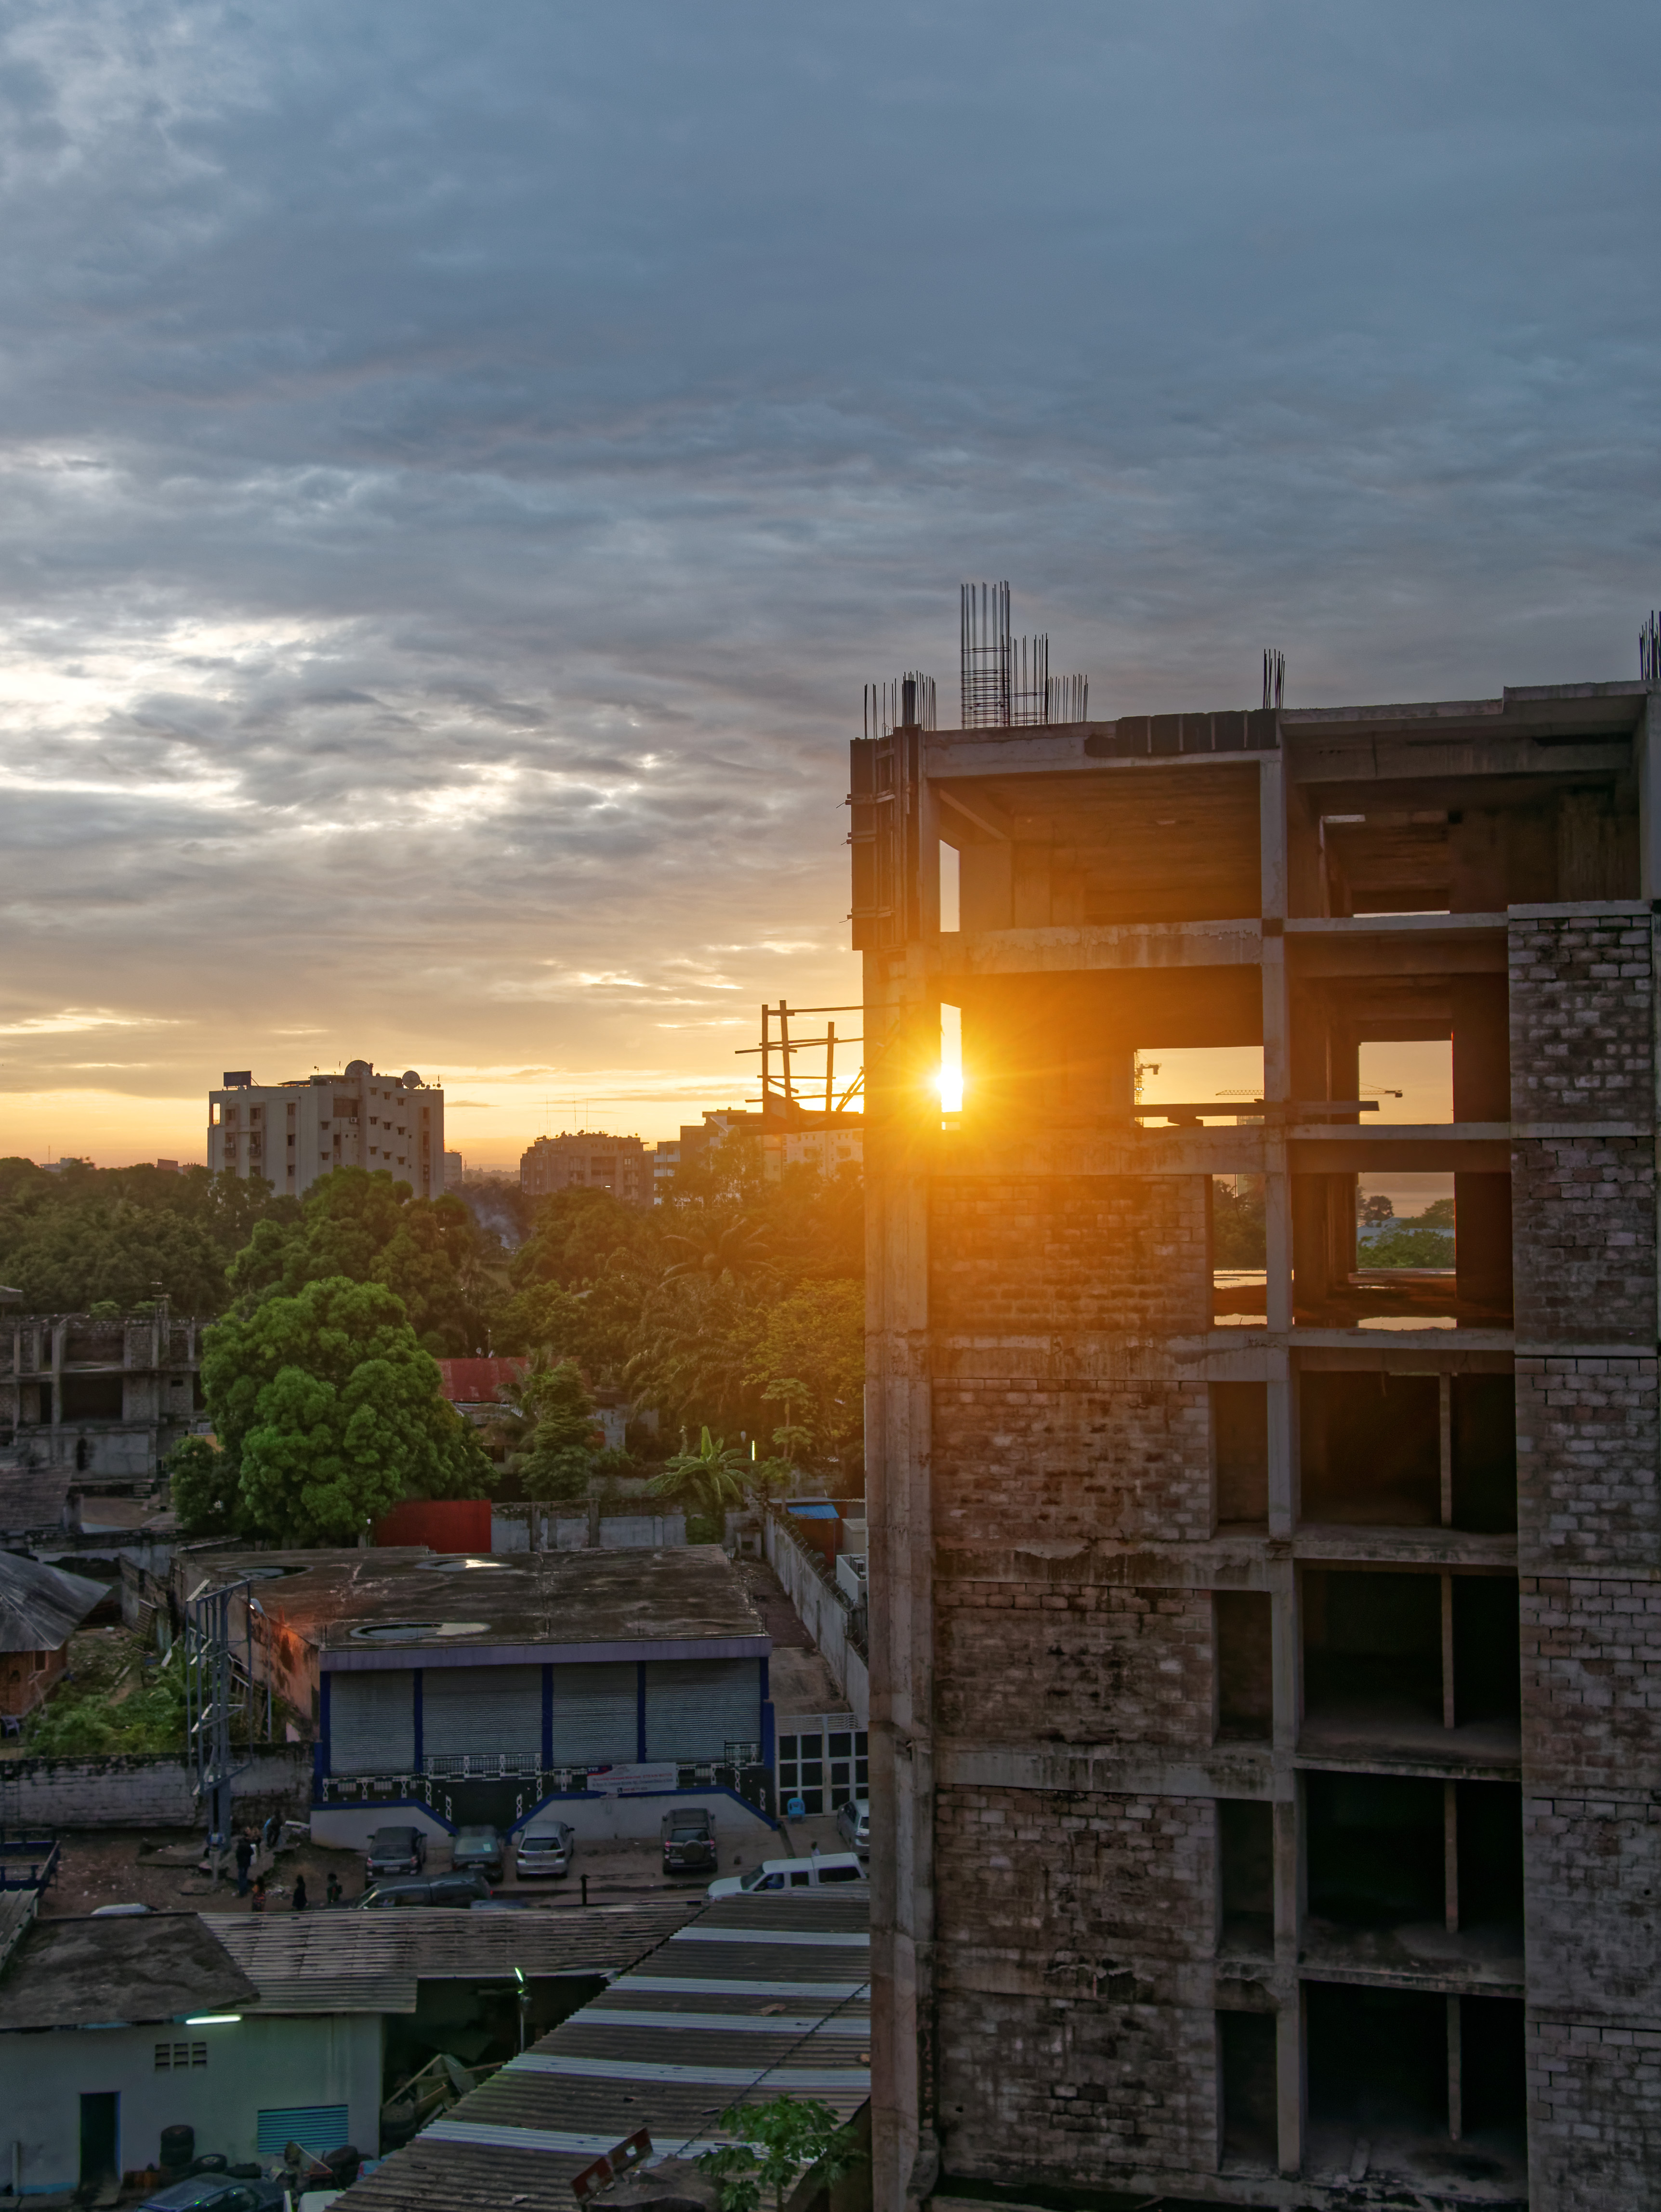 Le soleil joue à cache-cache avec les immeubles en construction